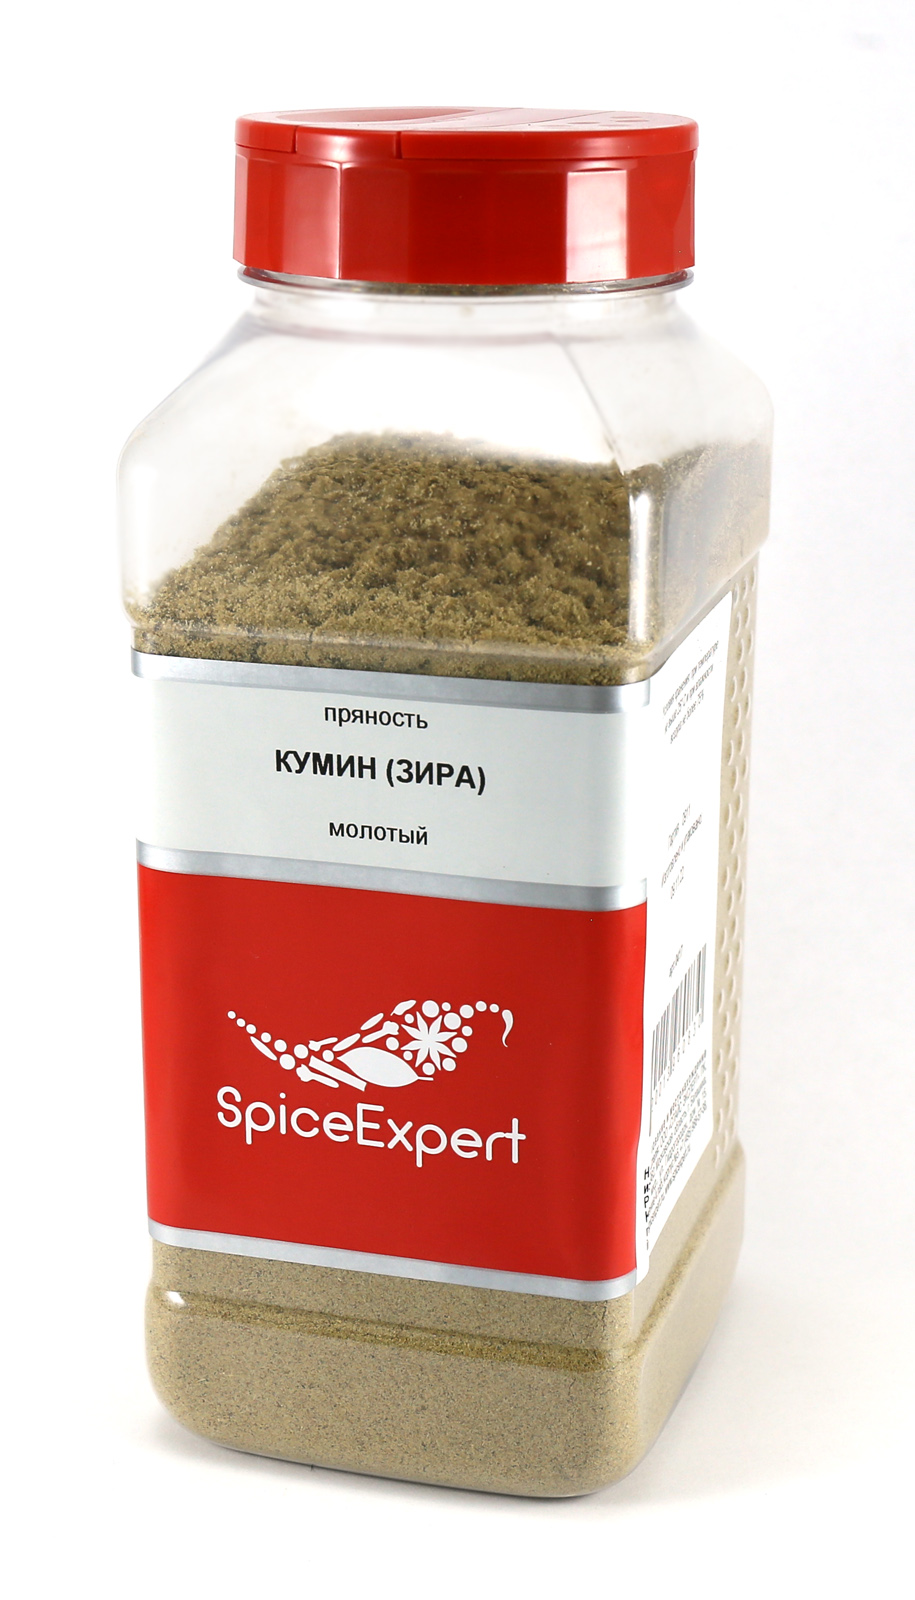 Кумин SpiceExpert (зира) молотый 450г